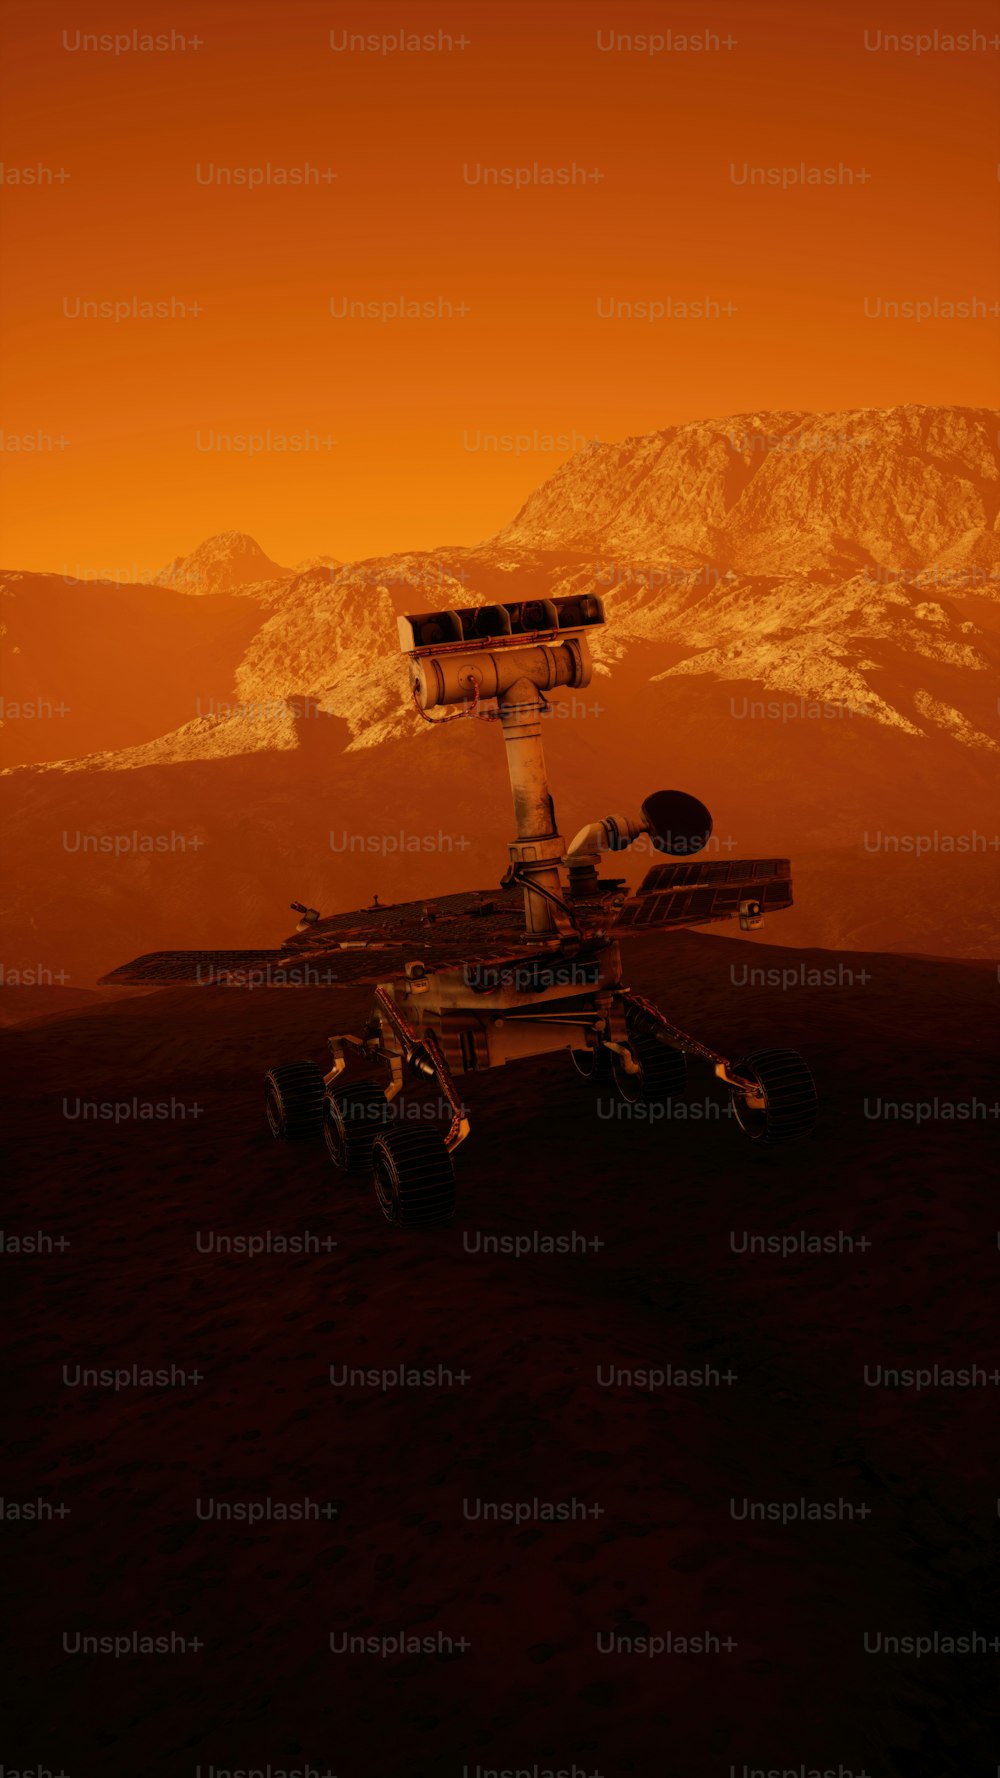 Un'immagine generata al computer di una stazione spaziale nel deserto